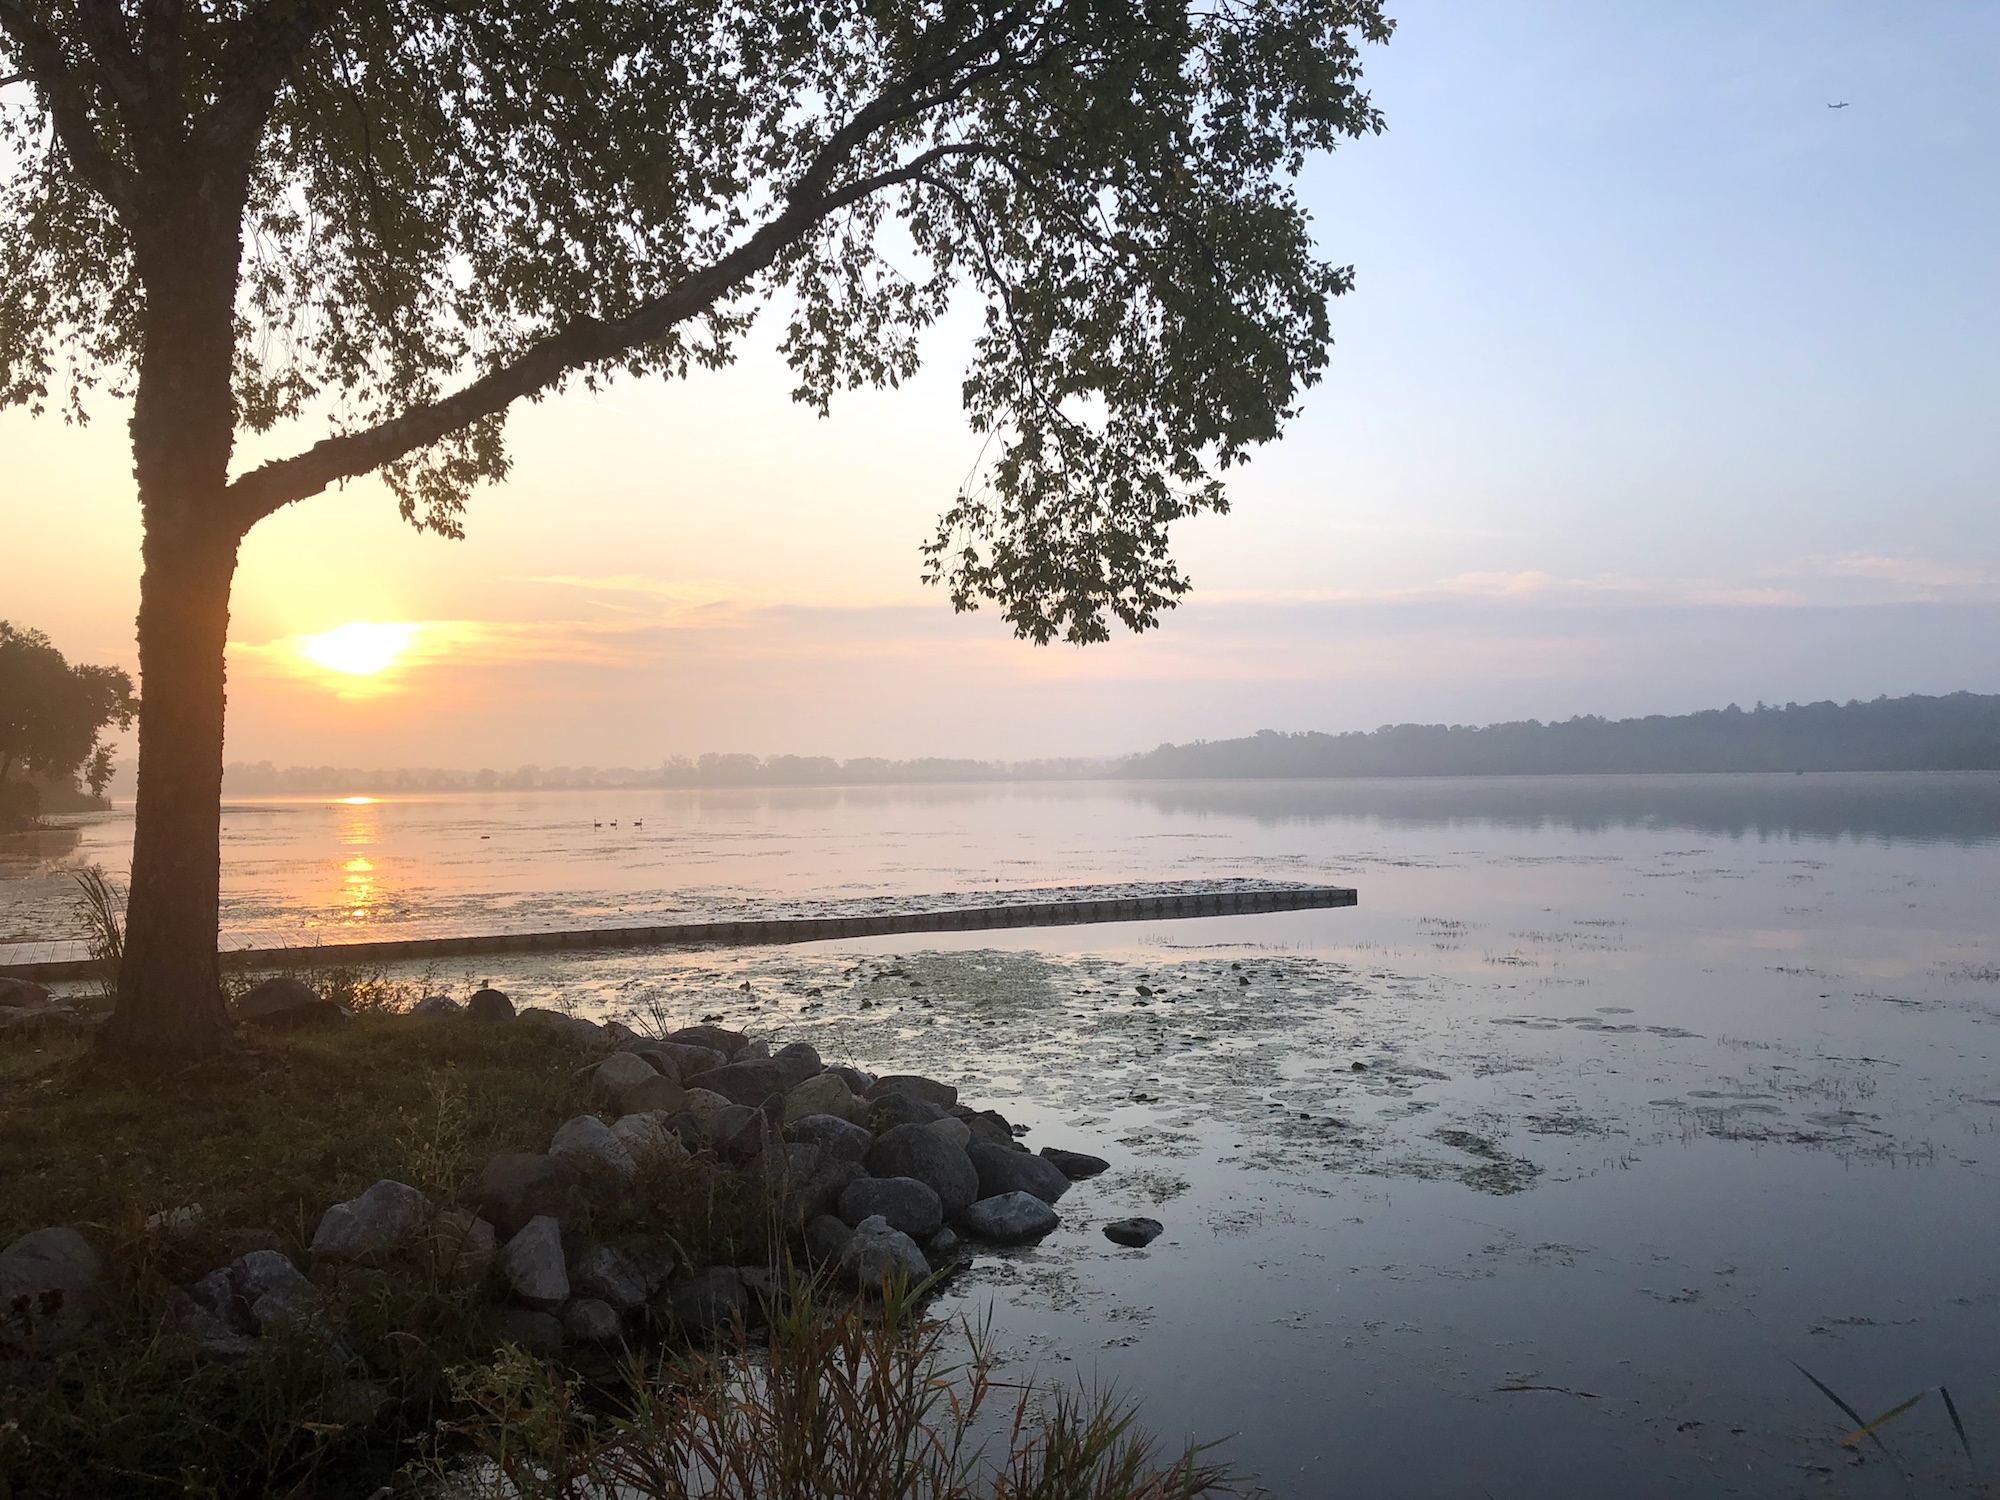 Lake Wingra on September 20, 2019.